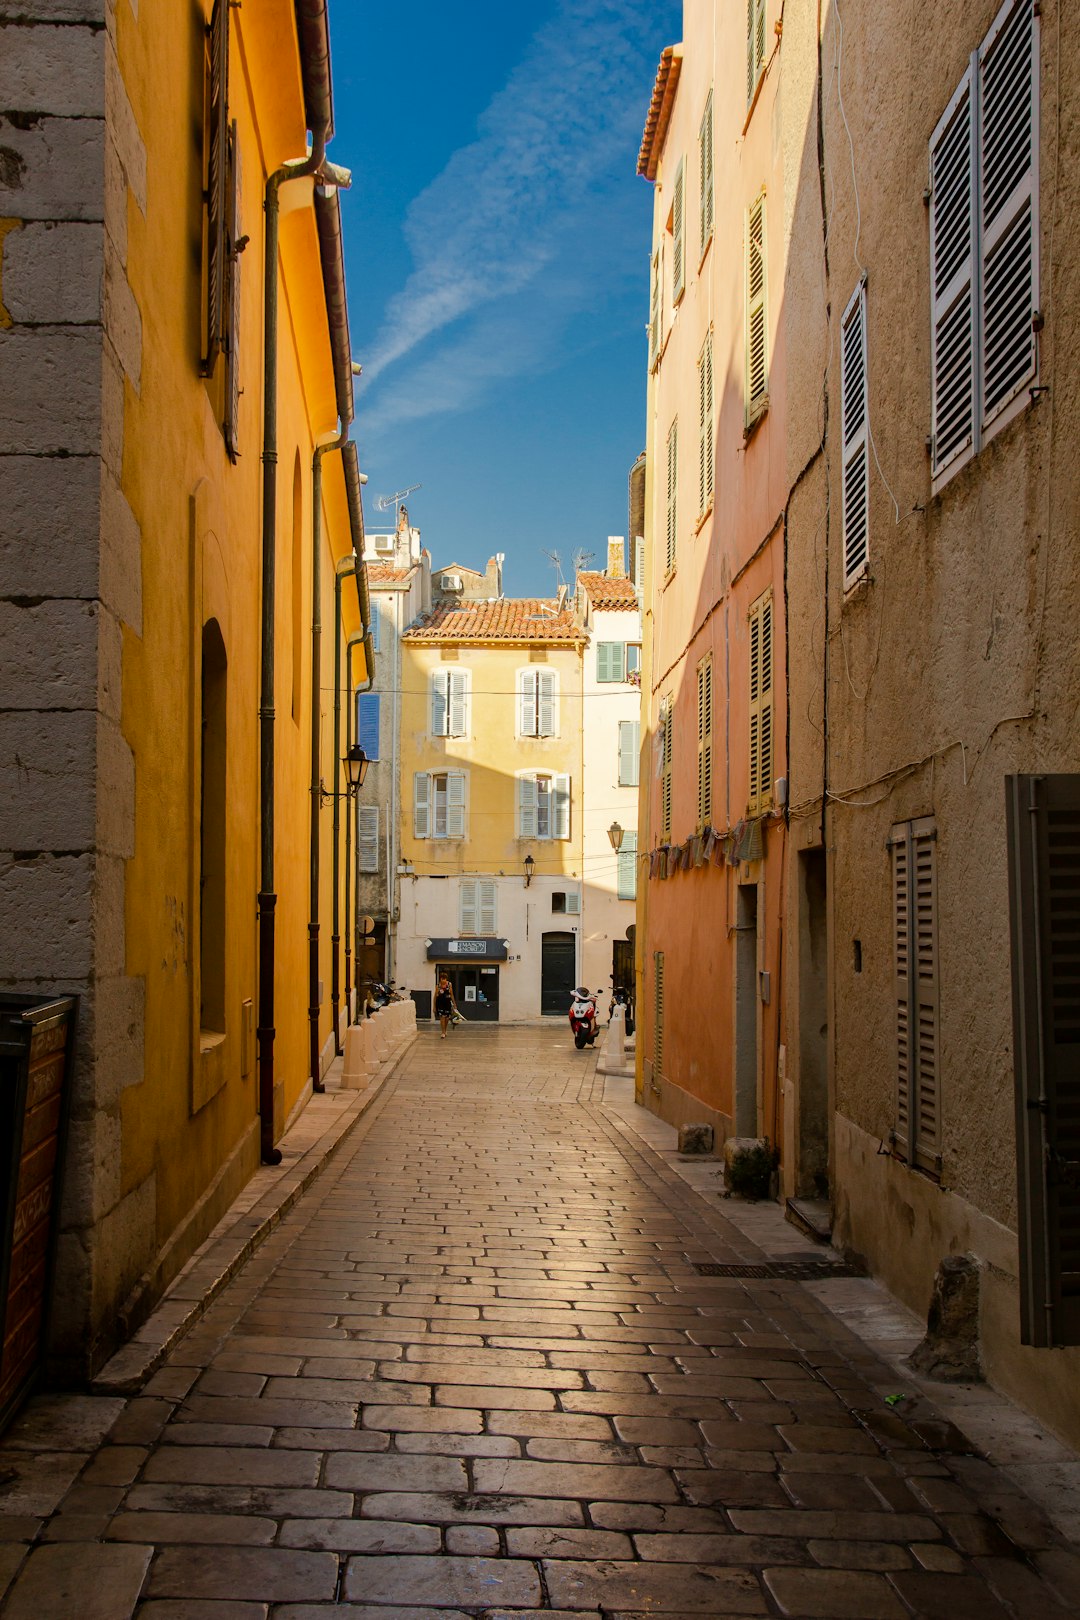 Town photo spot Saint-Tropez Cannes